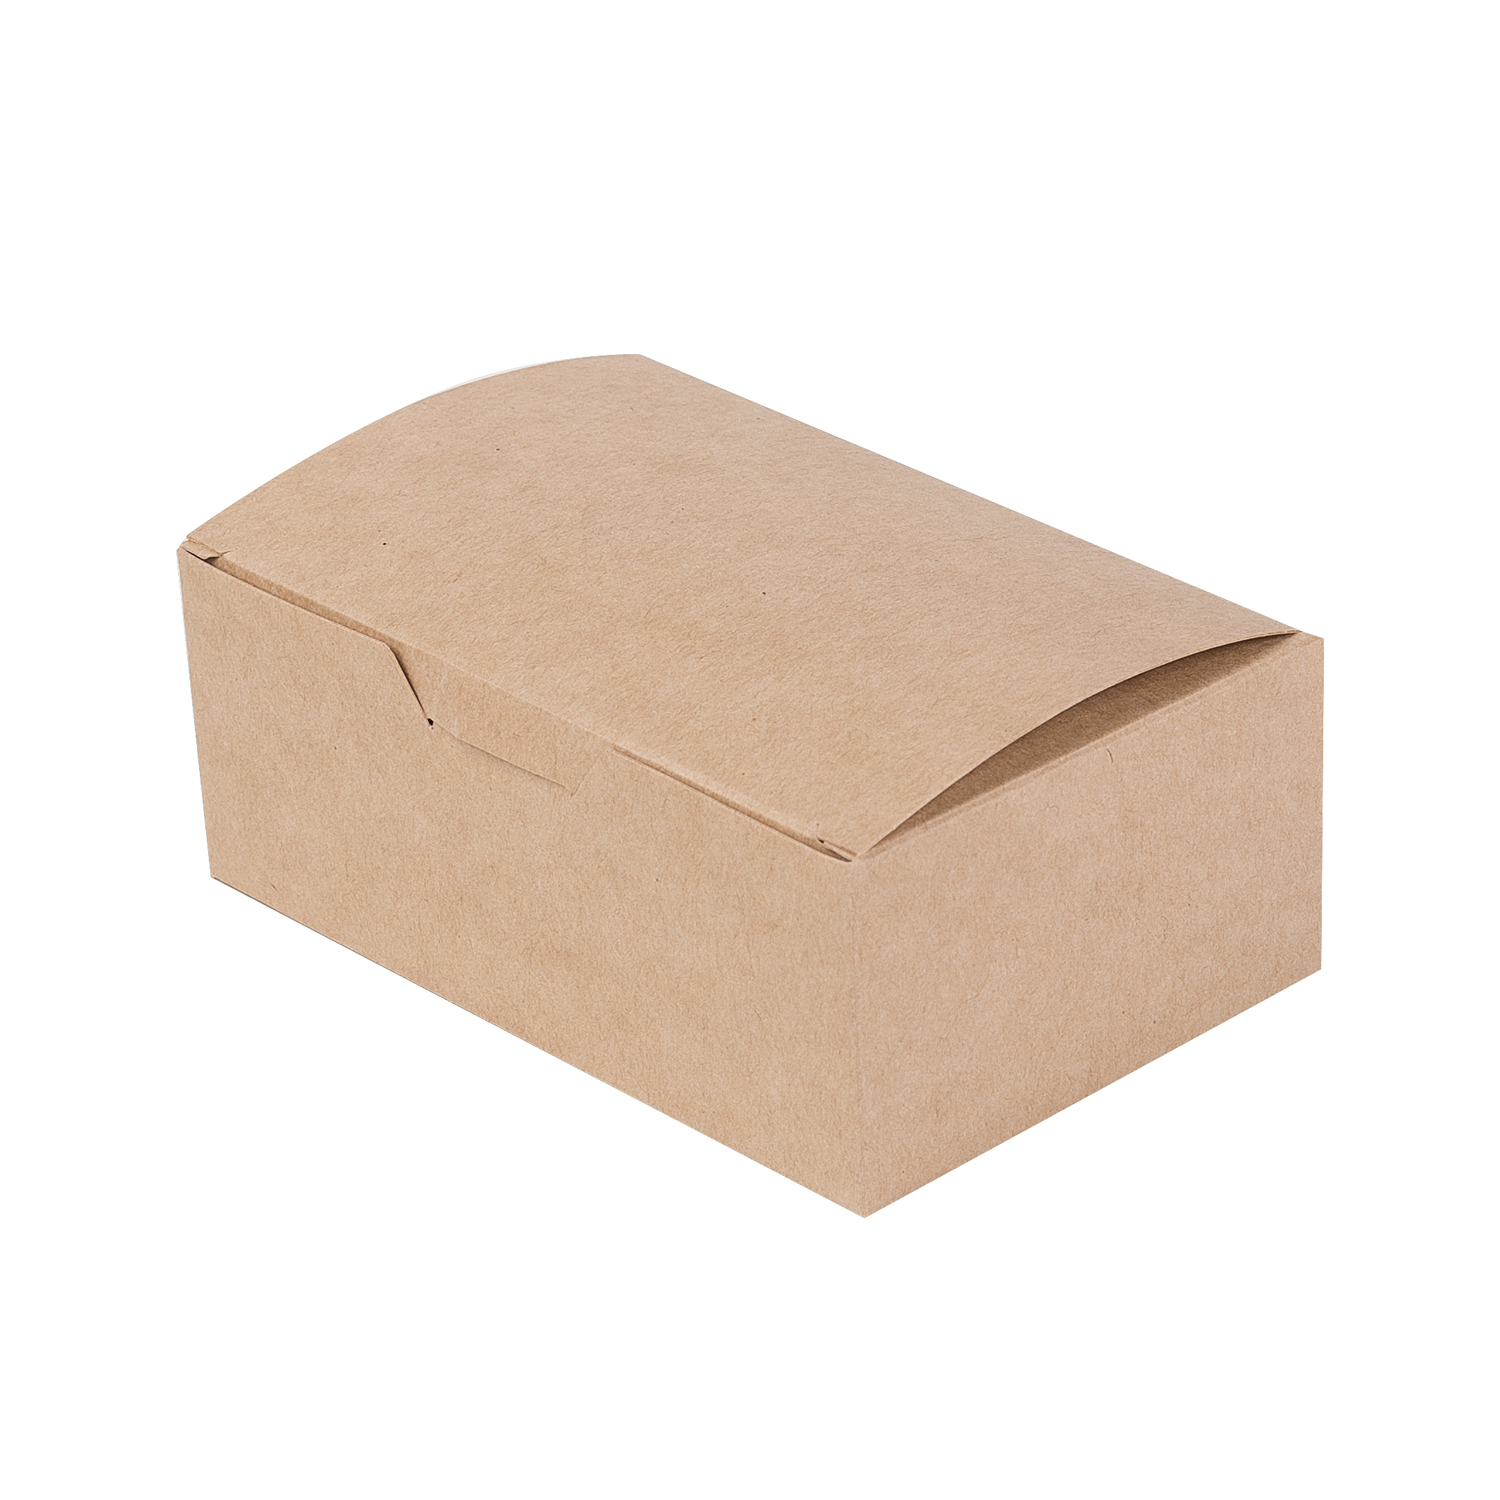 OSQ FAST FOOD BOX S Упаковка для нагетсов/крыльев/фри 11,5х7,5х4,5см